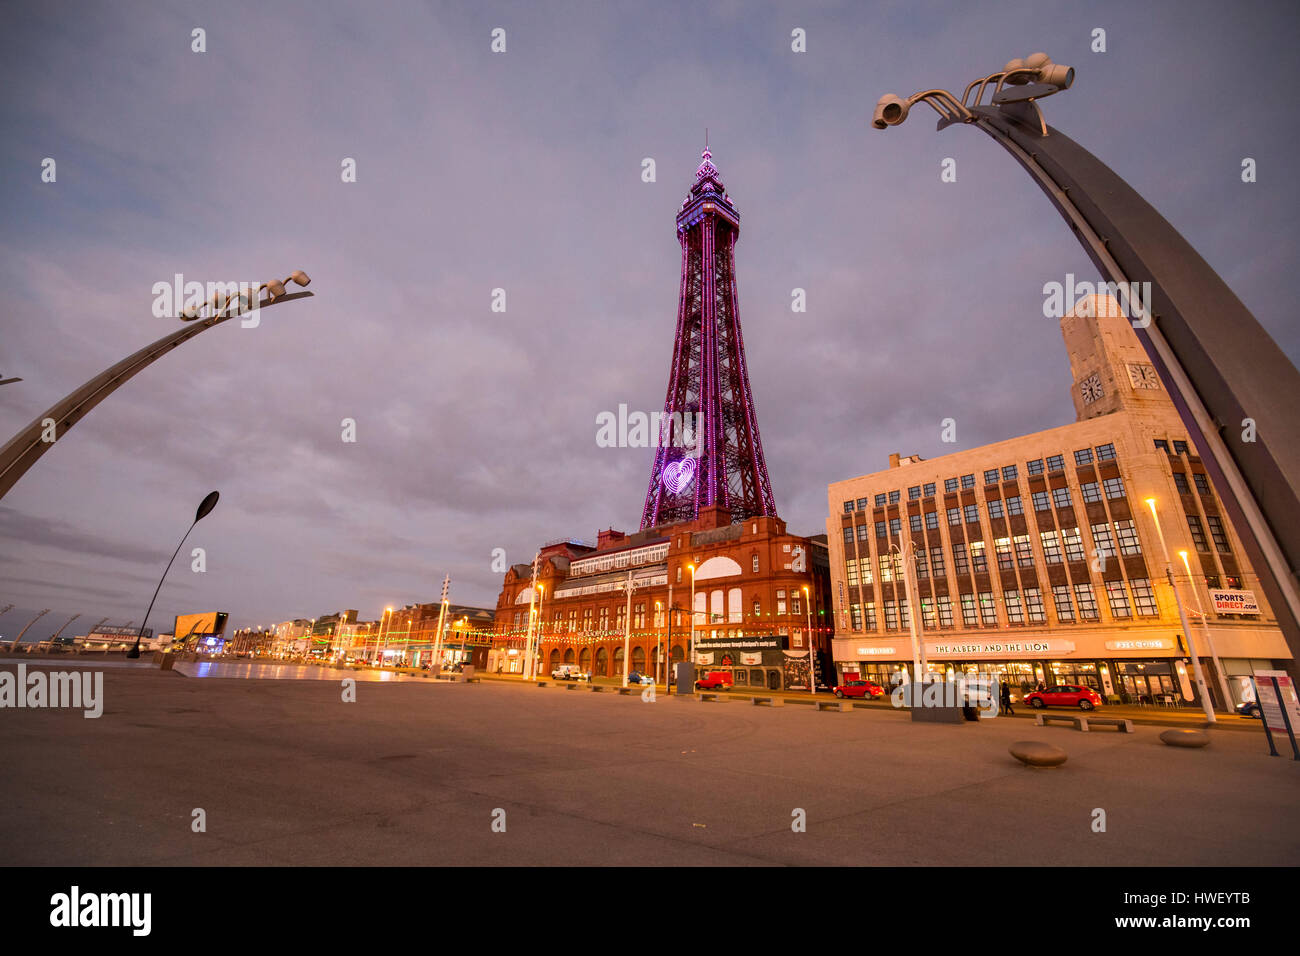 Blackpool - una stazione balneare sul Mare d'Irlanda costa dell'Inghilterra. La Blackpool Tower illuminata a luce di colore viola. Foto Stock